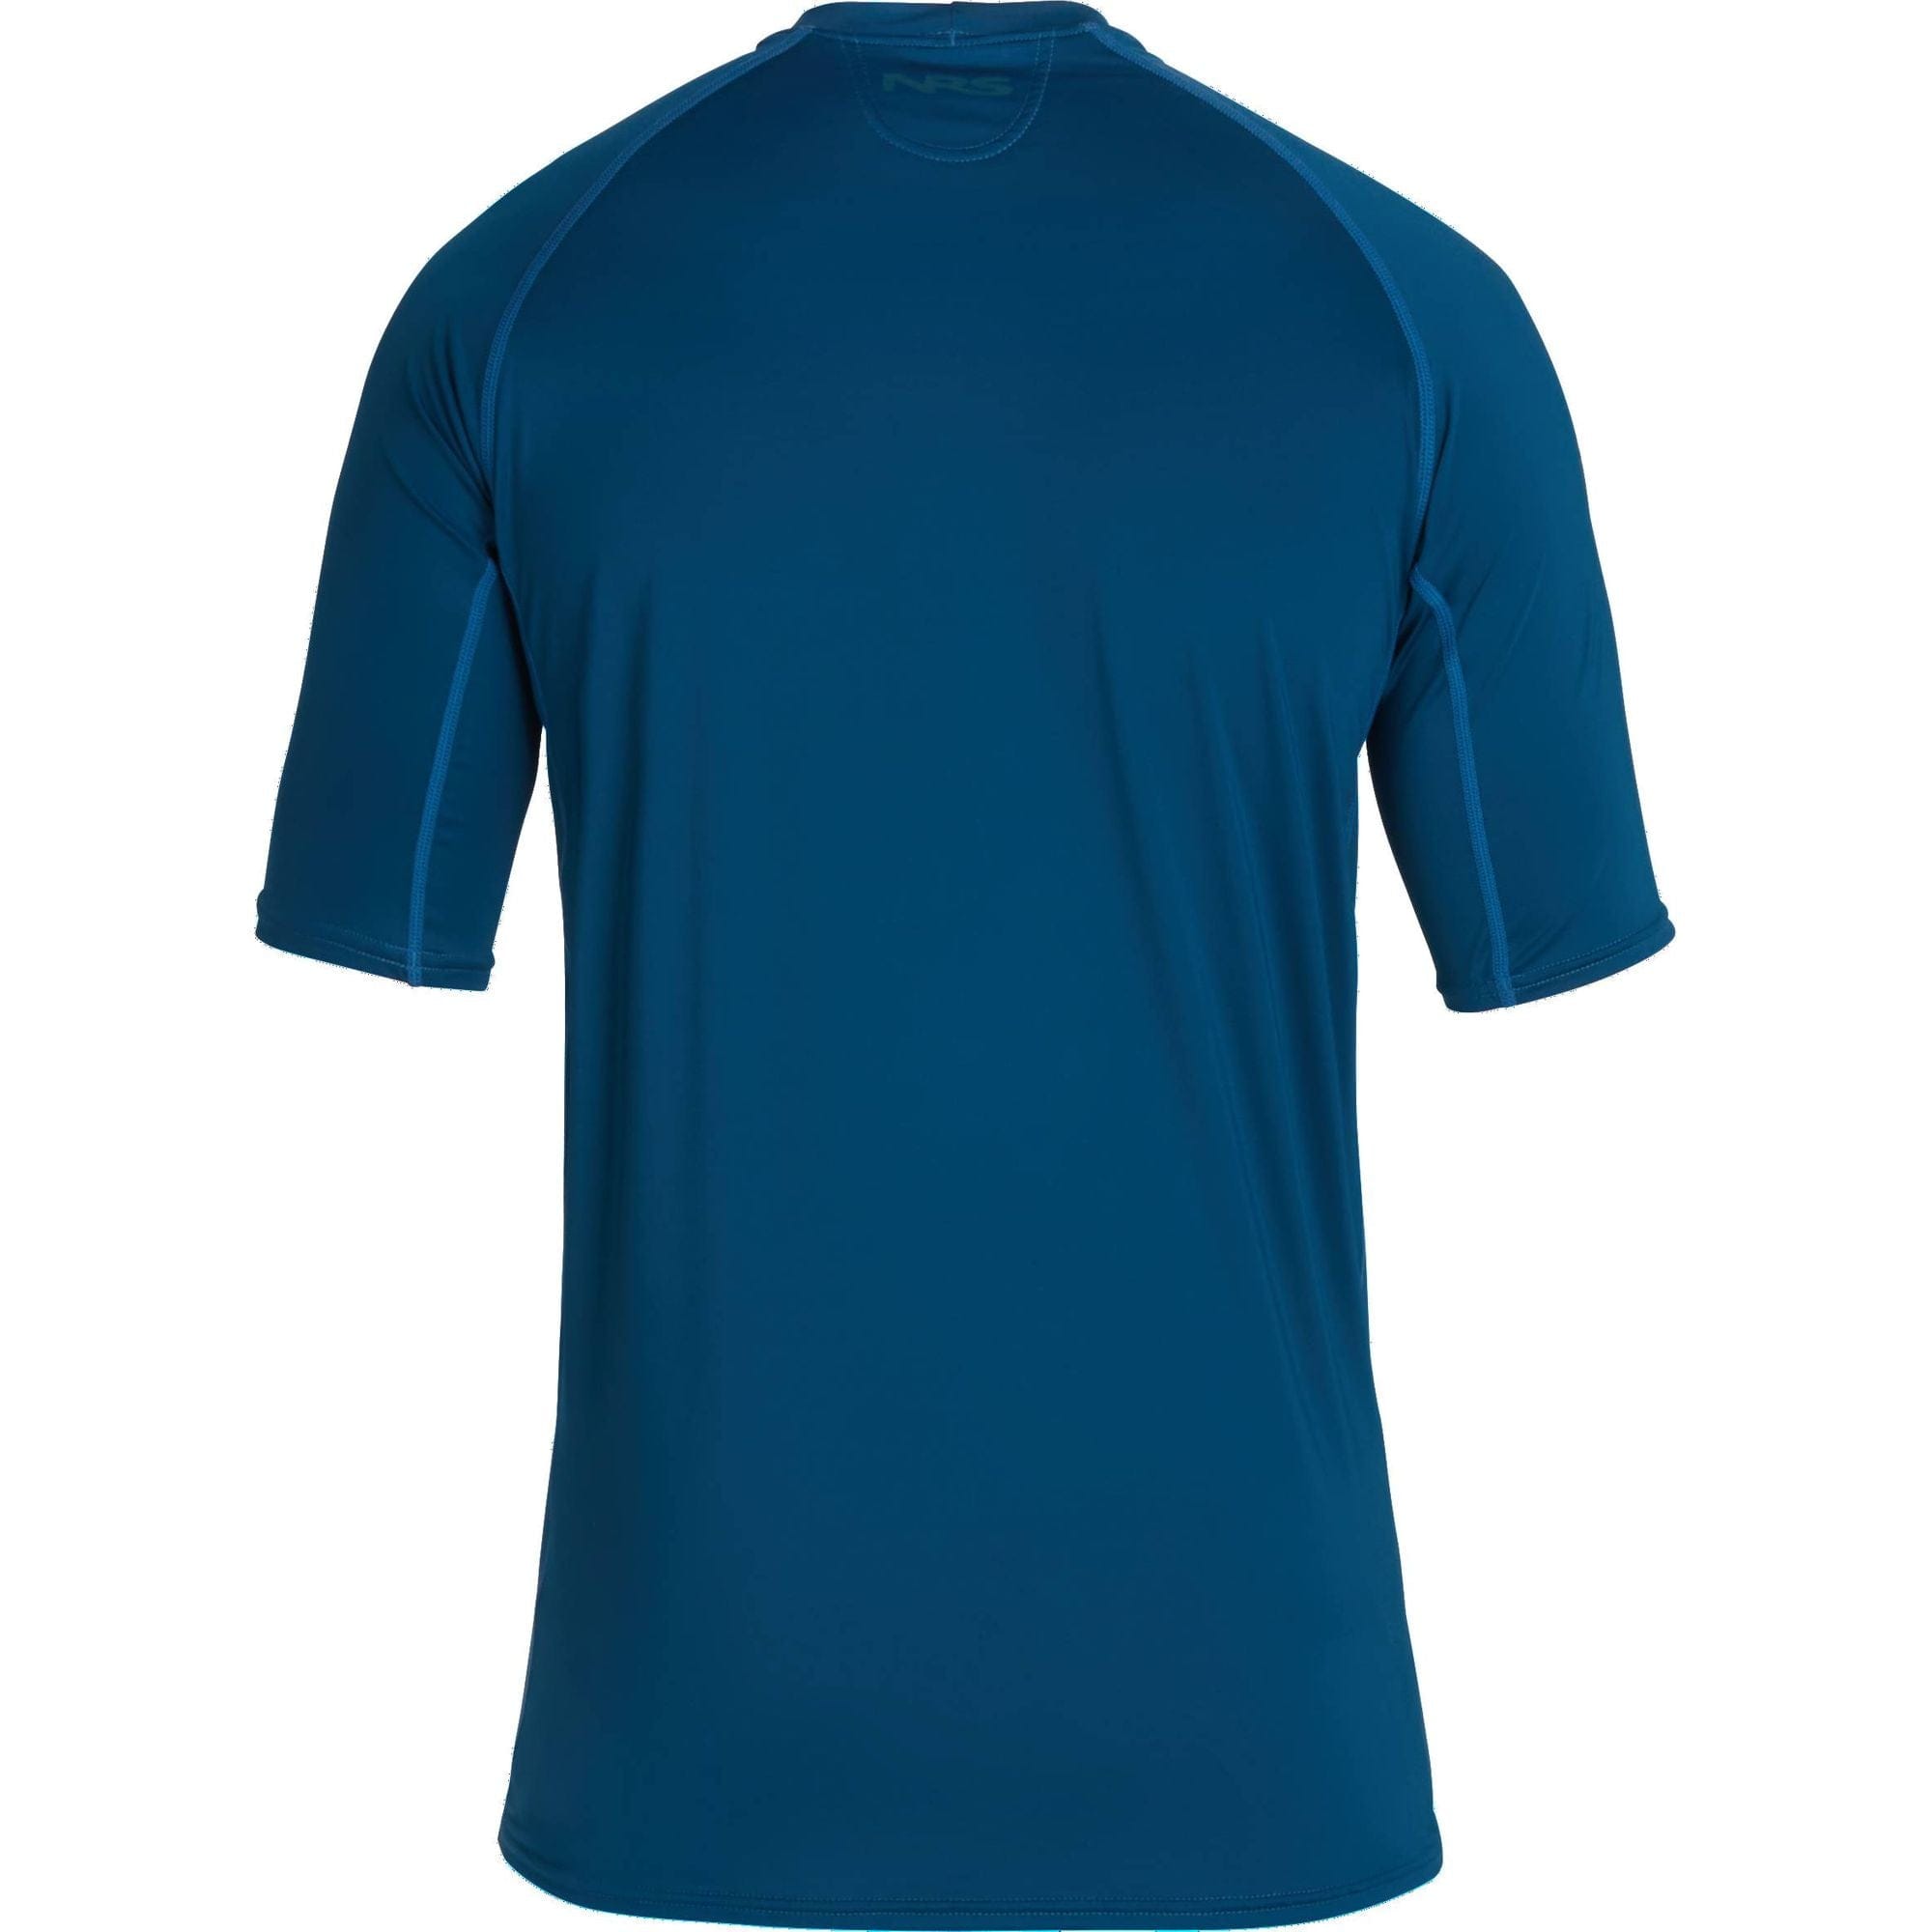 NRS Men's Rashguard Short Sleeve Shirt